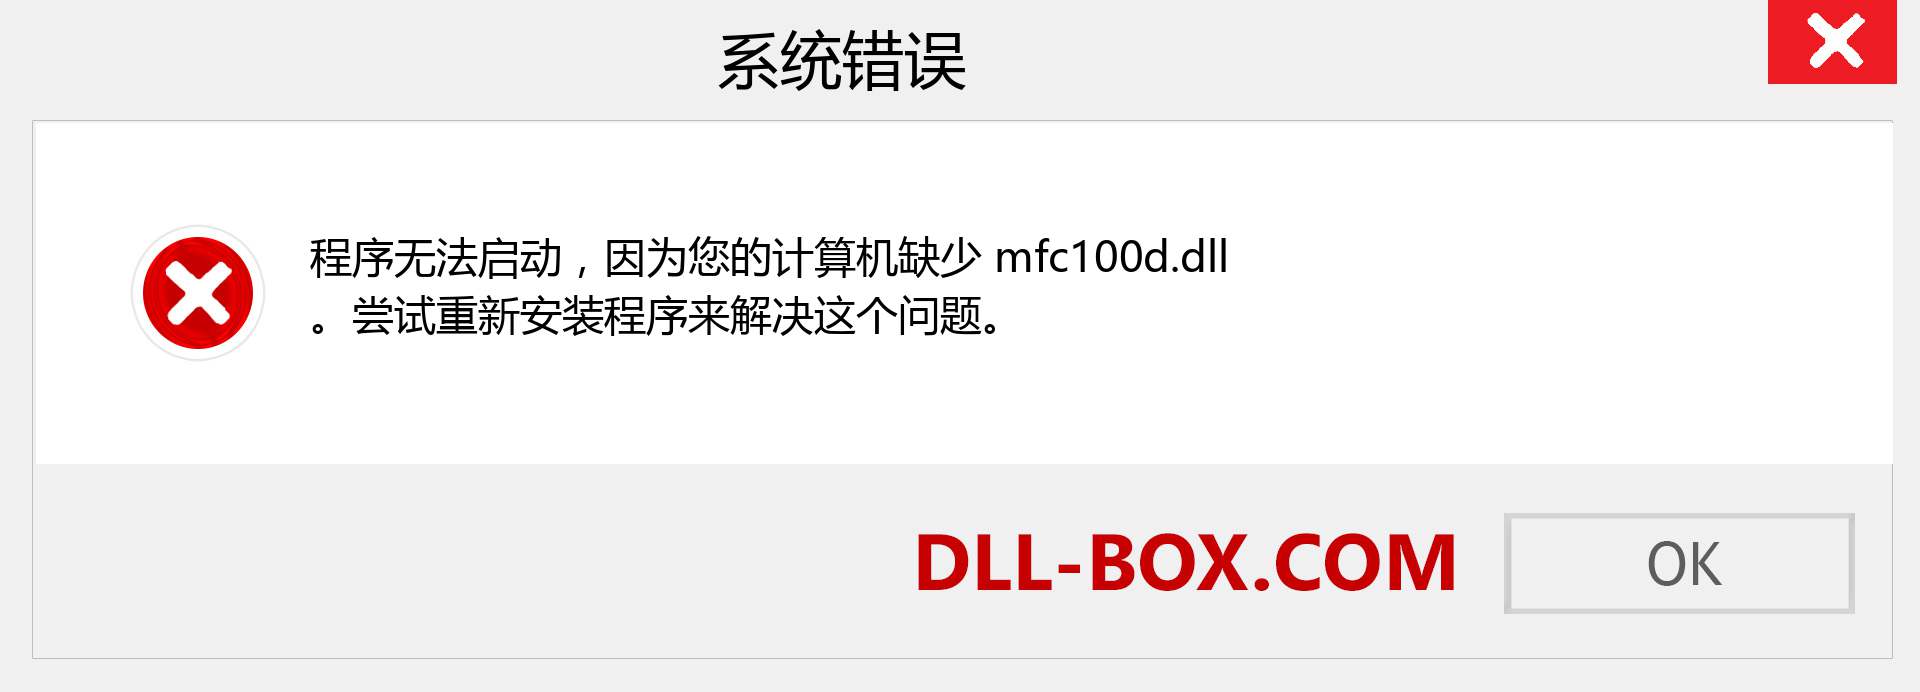 mfc100d.dll 文件丢失？。 适用于 Windows 7、8、10 的下载 - 修复 Windows、照片、图像上的 mfc100d dll 丢失错误